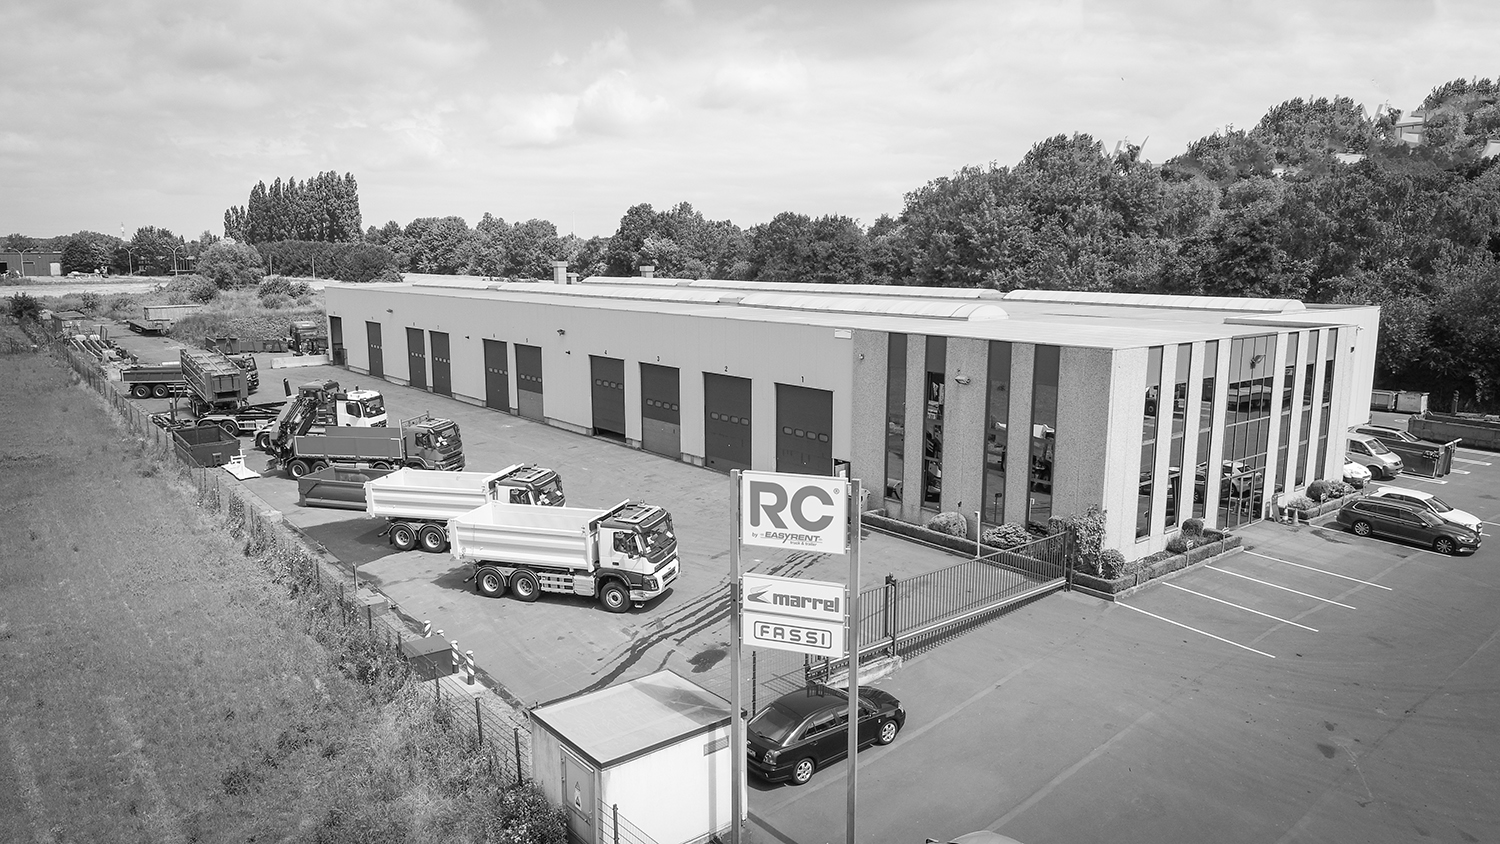 Luftansicht des Standorts Atelier RC in Herstal, Belgien. Große Industriehalle mit Kipperfahrzeugen auf dem Hof.